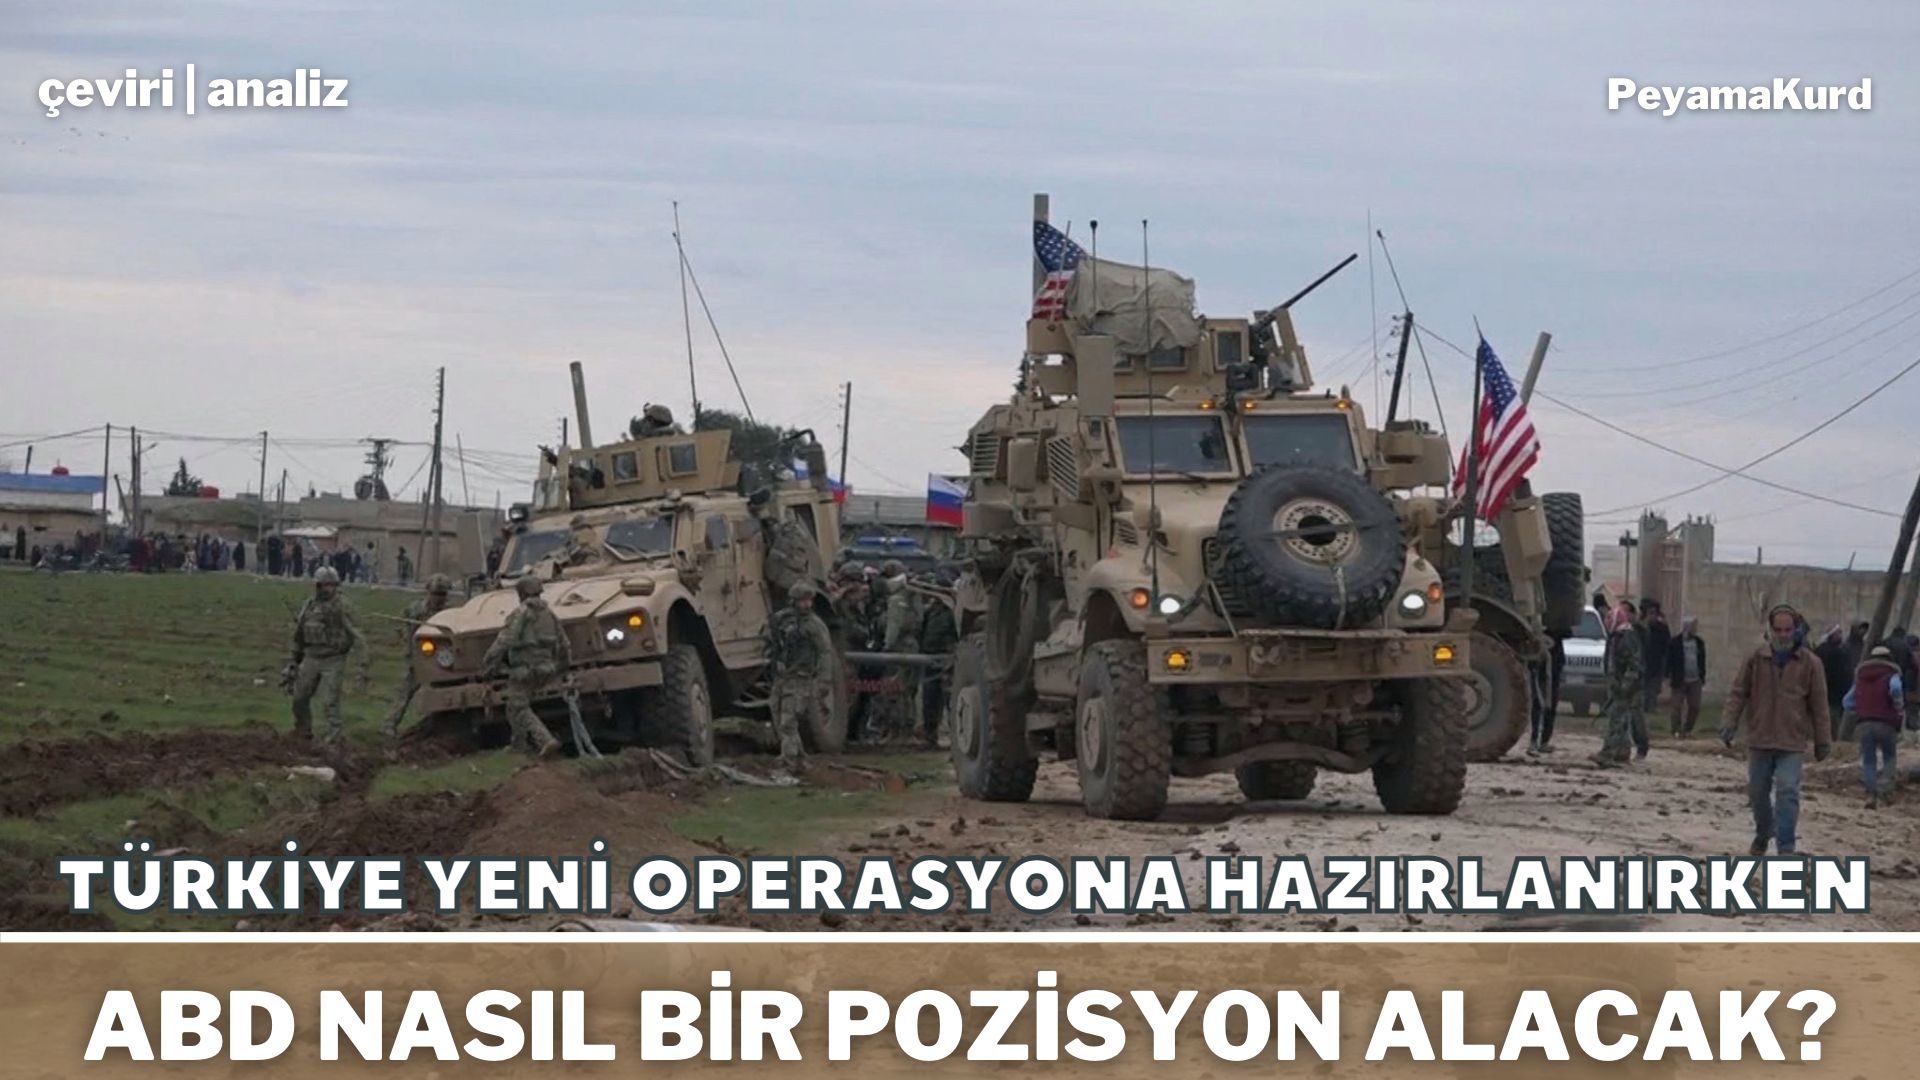 Türkiye'nin hedefi 'yok edene kadar' operasyonlara devam etmek